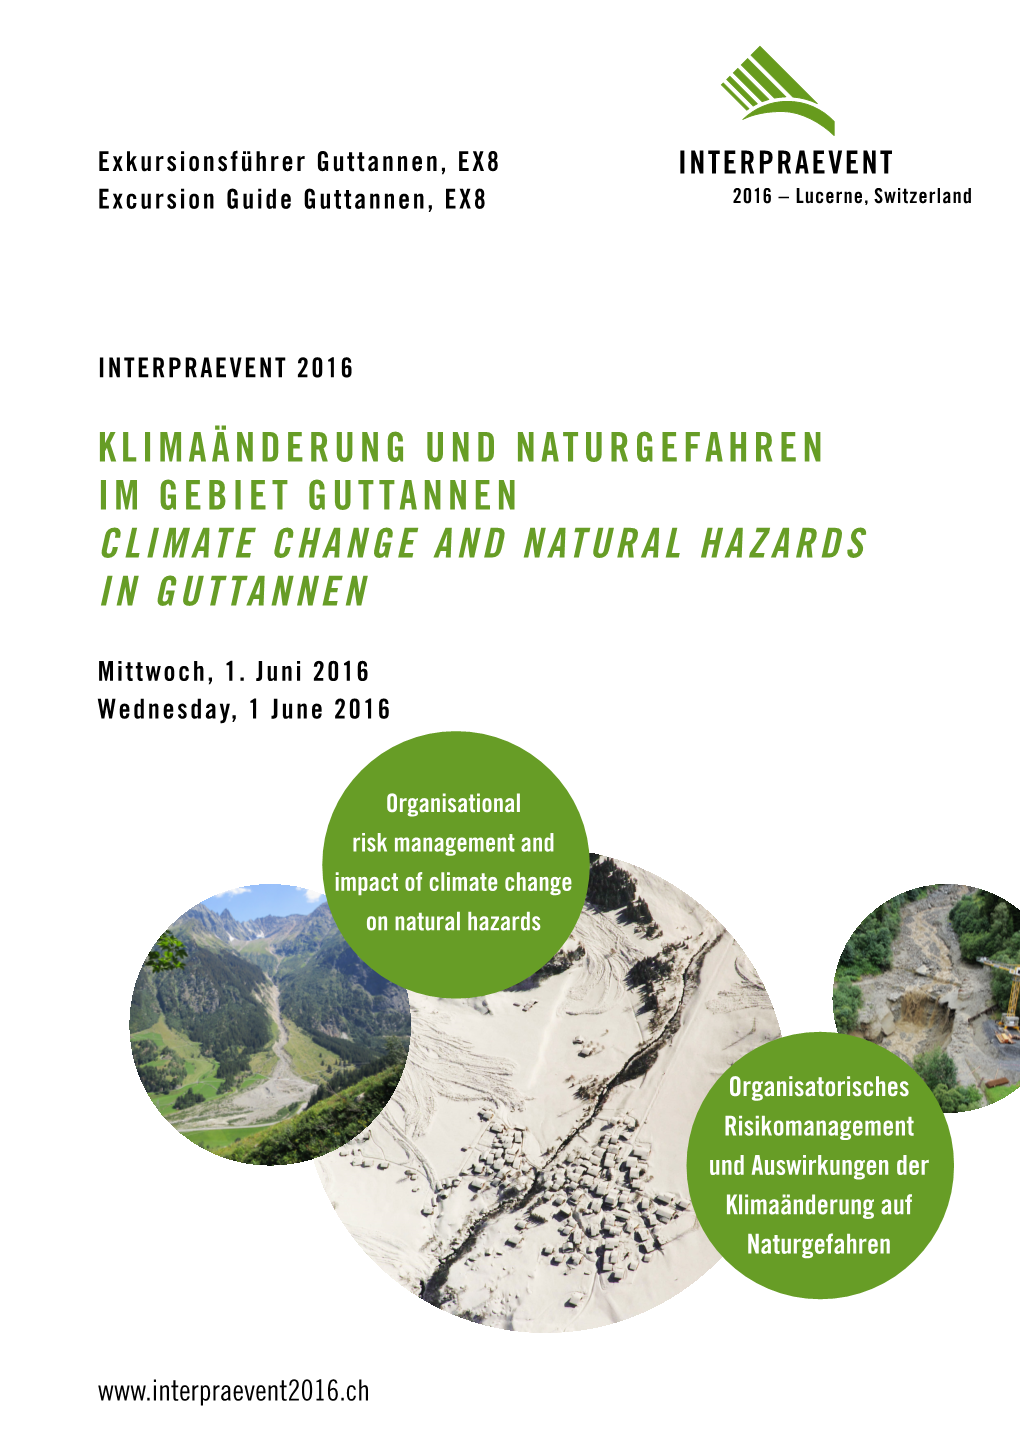 Climate Change and Natural Hazards in Guttannen